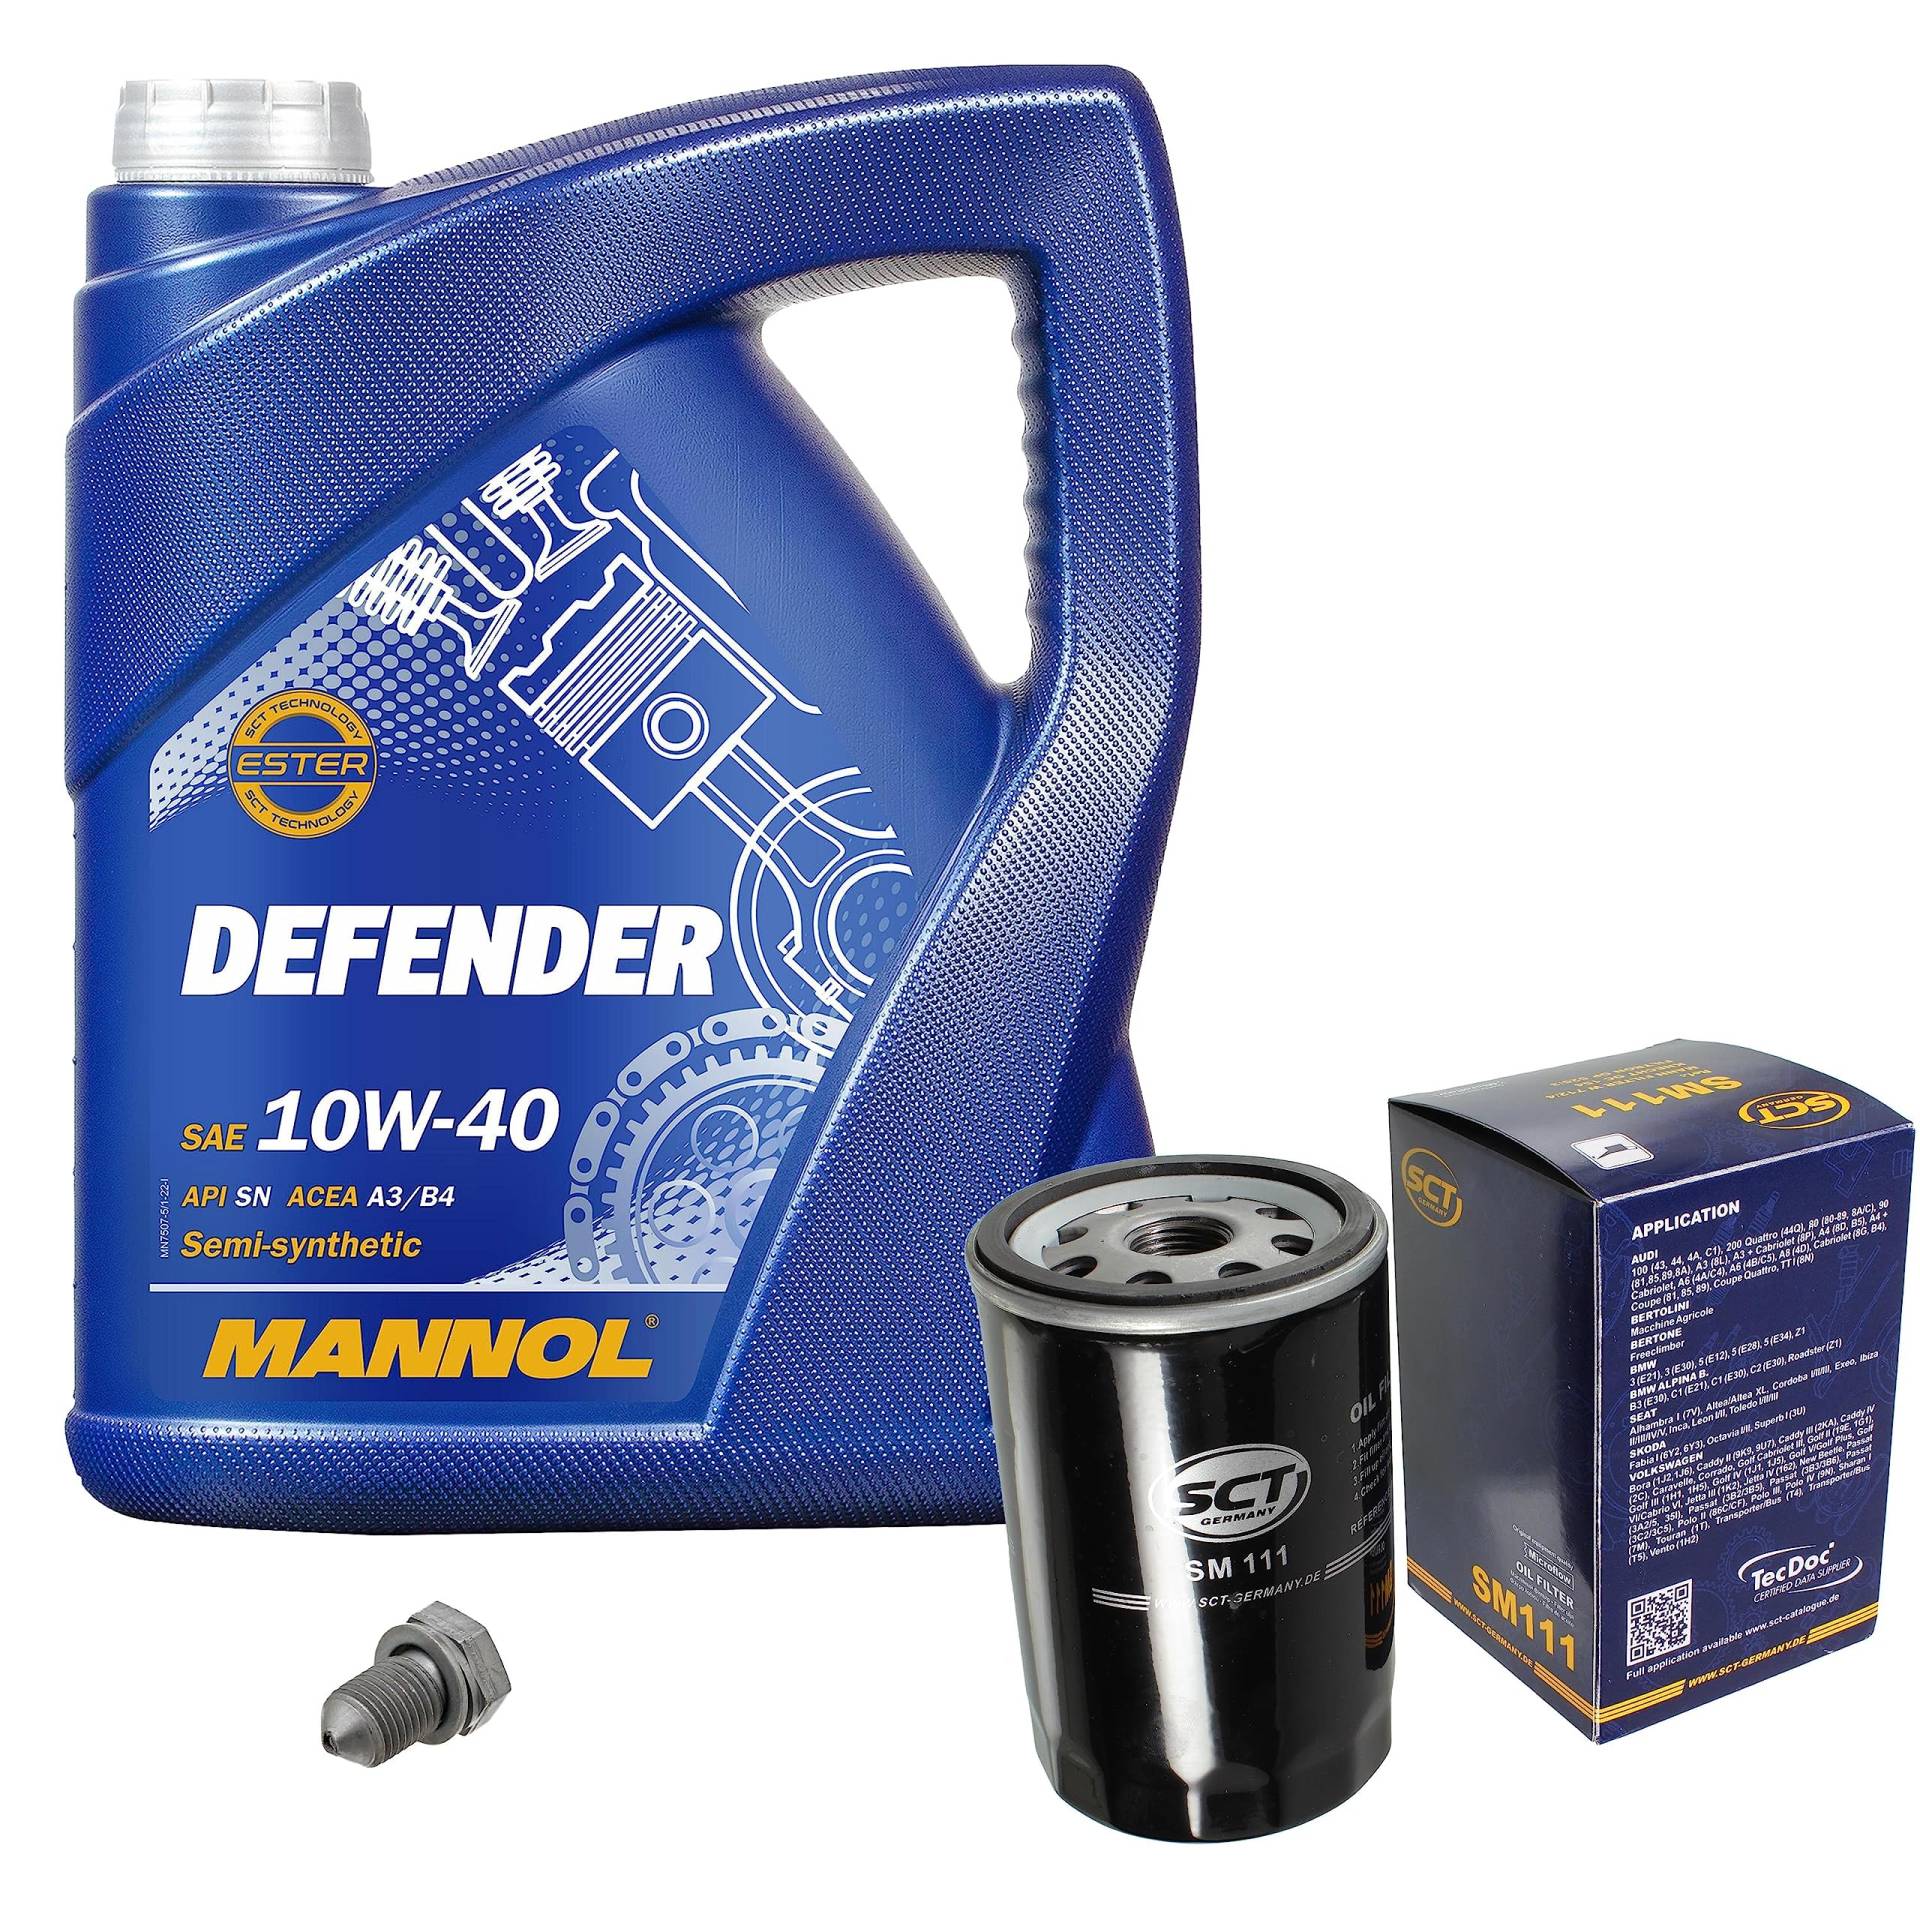 Inspektionspaket Wartungspaket Filterset mit 5 L Motoröl Defender 10W-40, Ölfilter, Verschlussschraube von EISENFELS